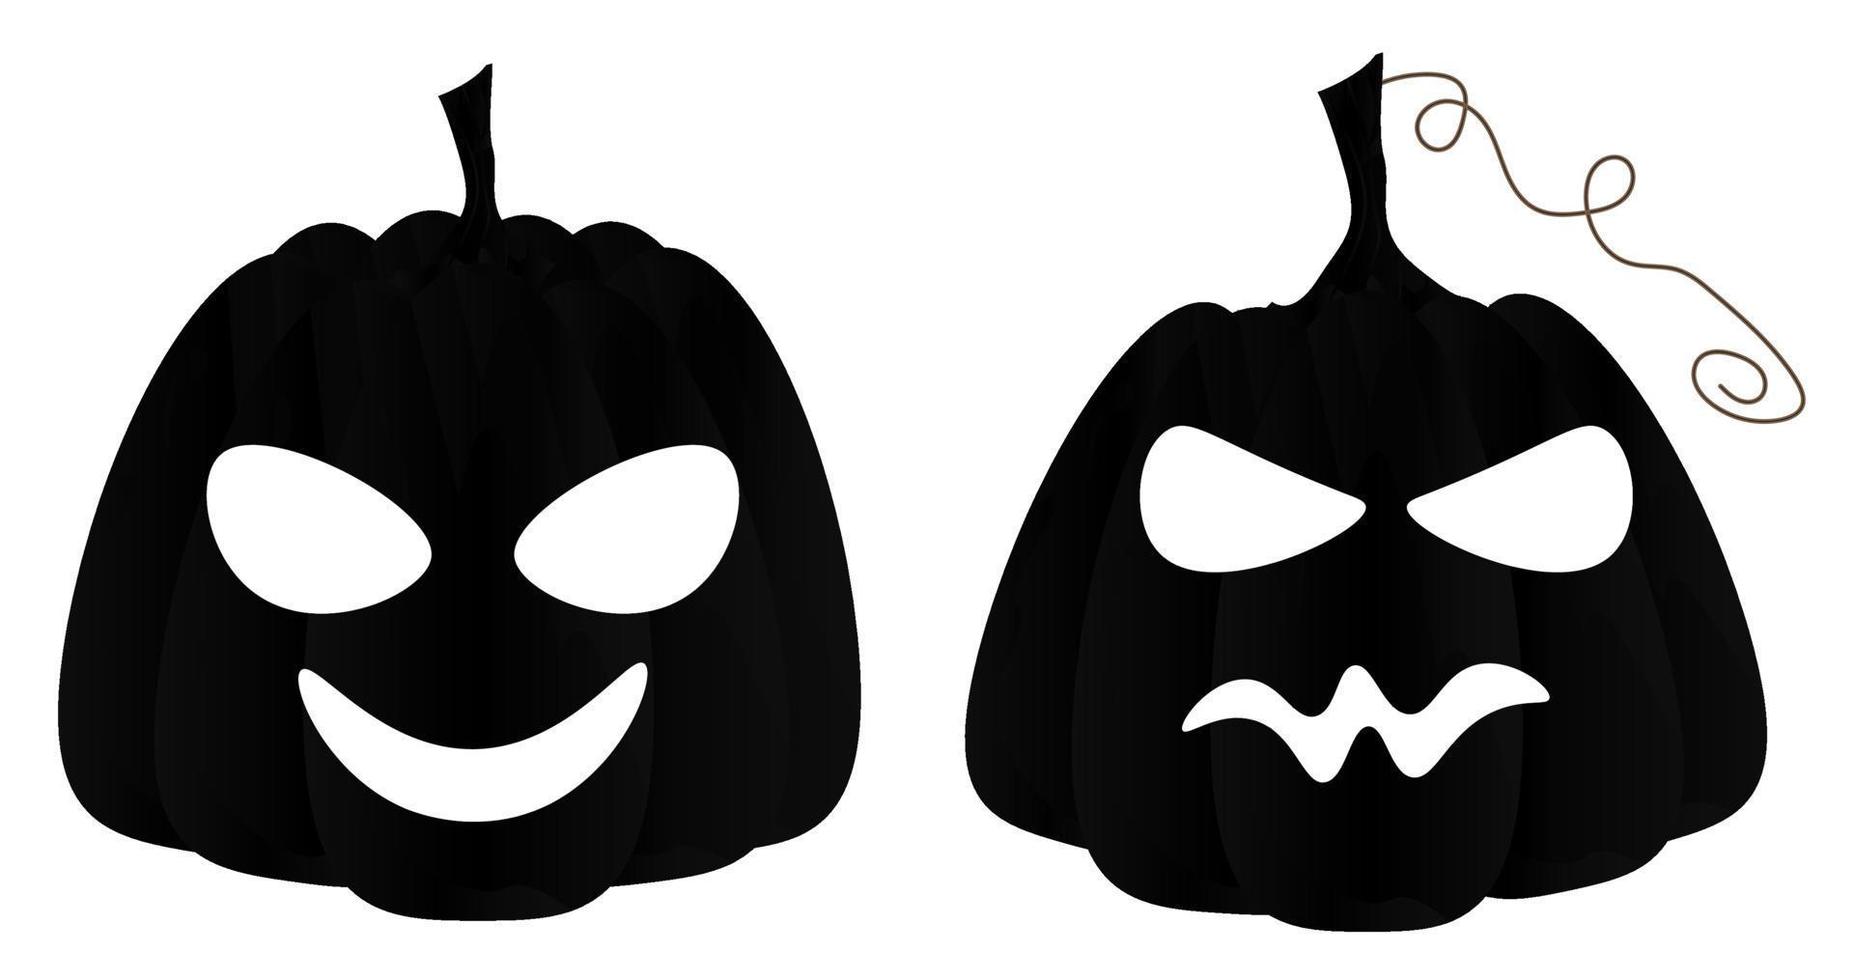 conjunto de calabazas de halloween talladas aterradoras con una cara  espeluznante, jack-o-lantern, símbolos de vacaciones de halloween.  colección de ilustraciones vectoriales para decoración navideña, postales,  invitaciones, banner 9660628 Vector en ...